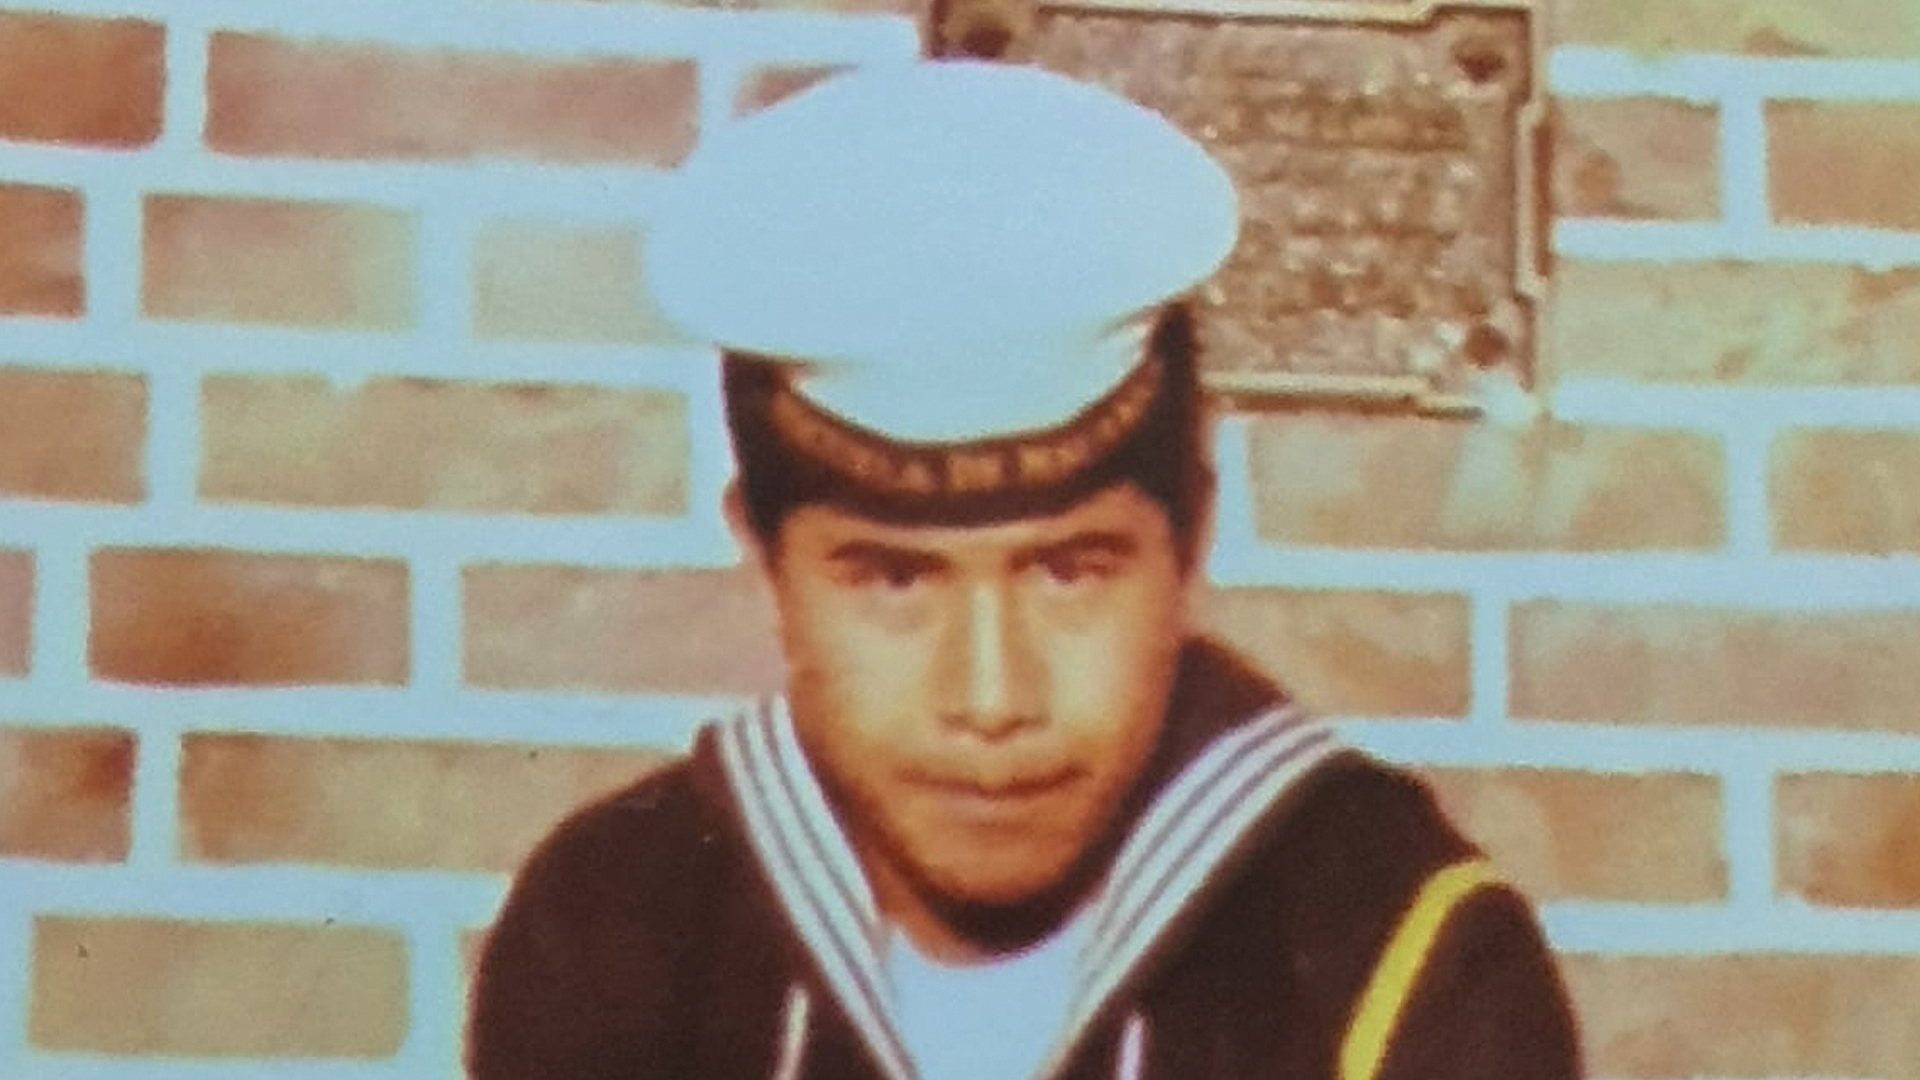 Hundimiento del Crucero ARA “General Belgrano”: la historia del héroe más joven de Malvinas y sus dos hermanos